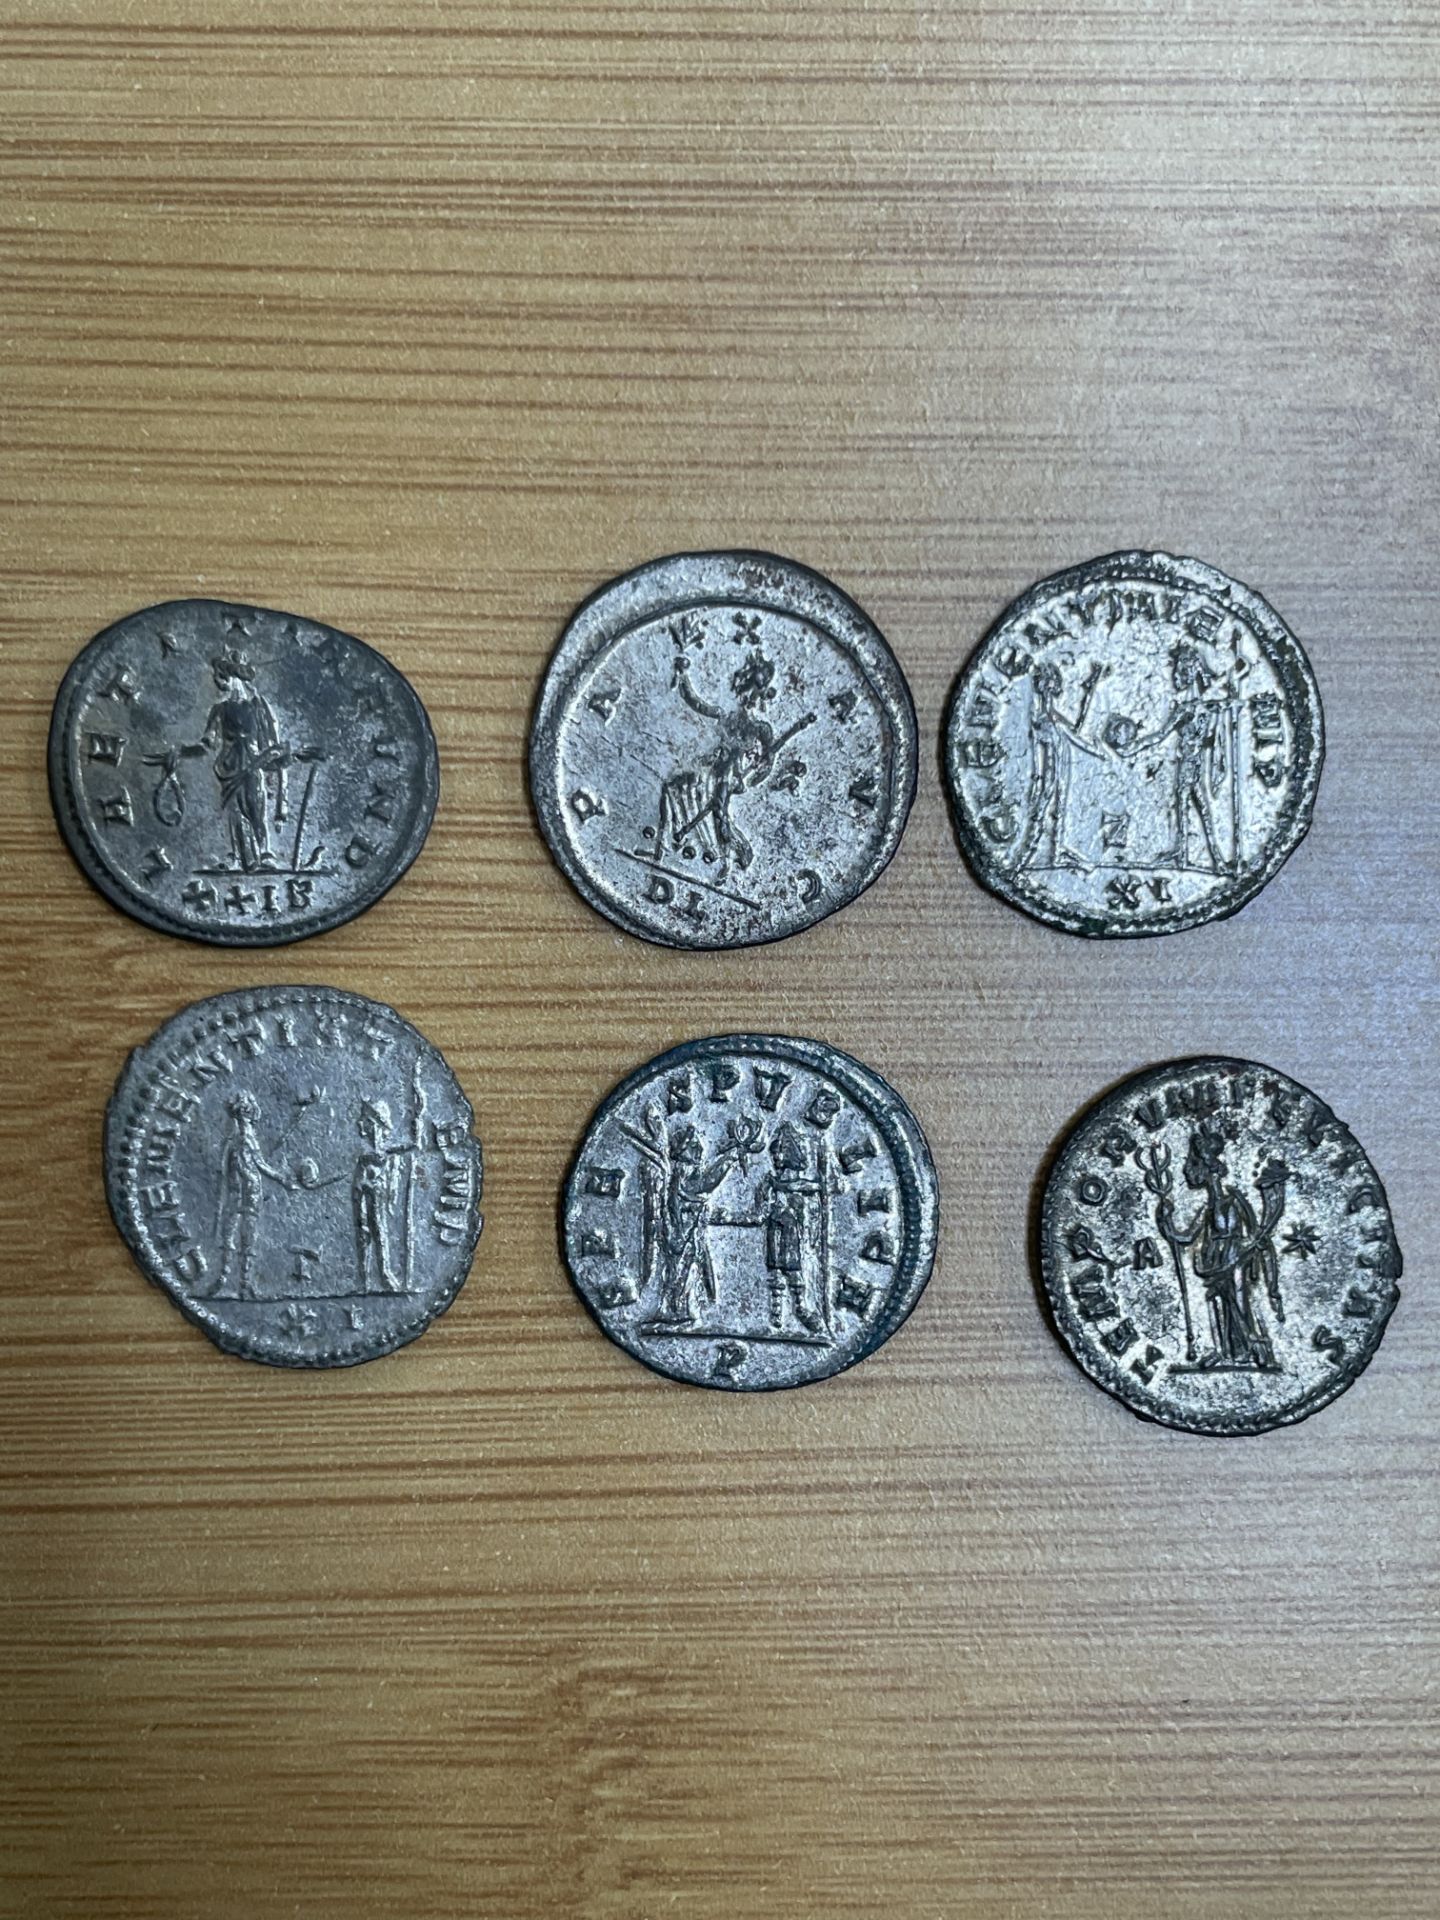 6x Ae antoninianii of Tacitus (275 - 276 CE) consisting of reverse types: AEQVITAS AVG, Aequitas - Bild 2 aus 2